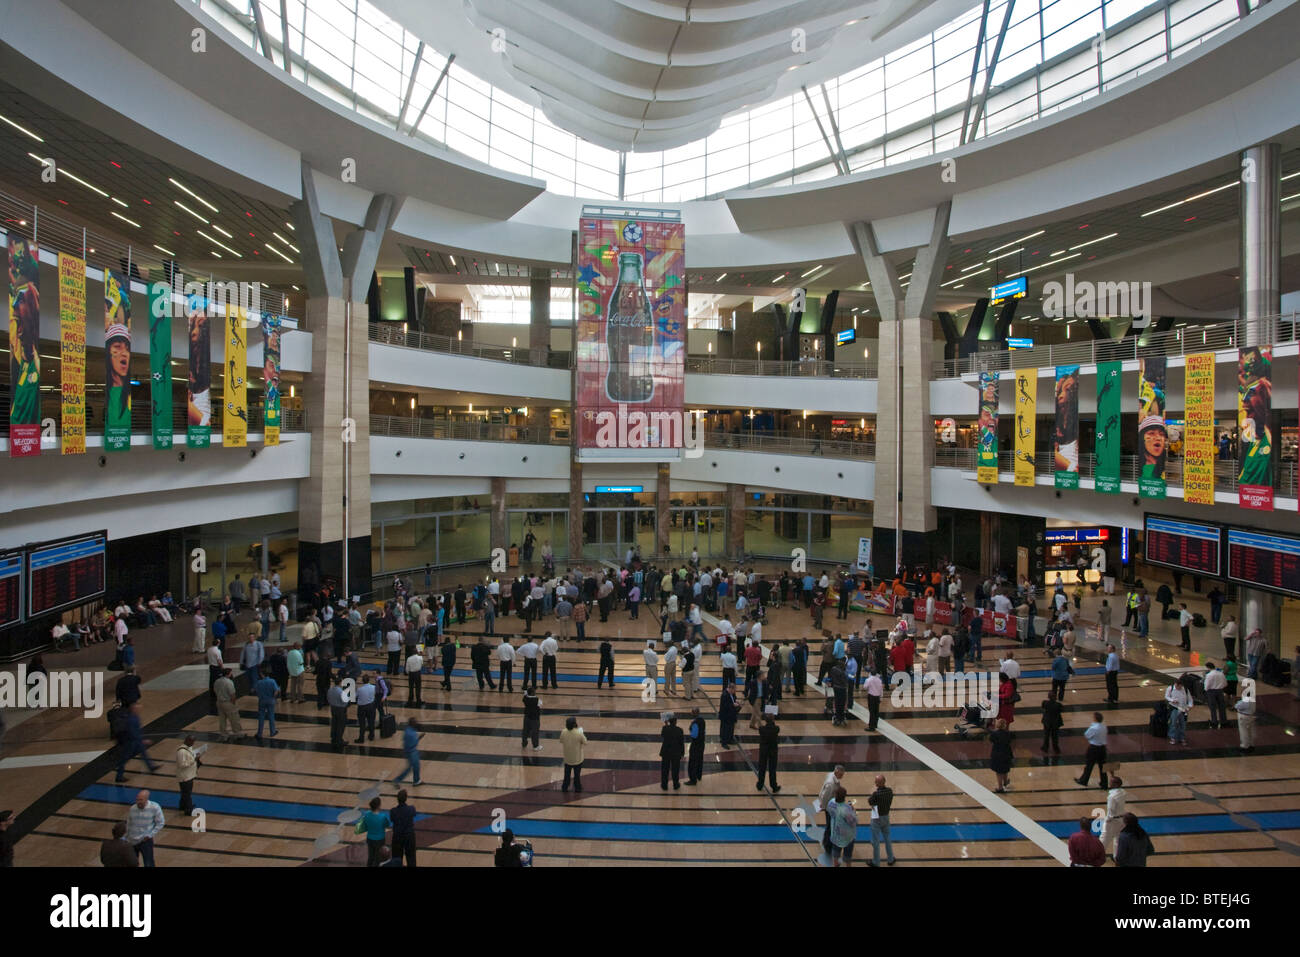 El hall de llegadas en el aeropuerto Oliver Tambo en Johannesburgo Foto de stock